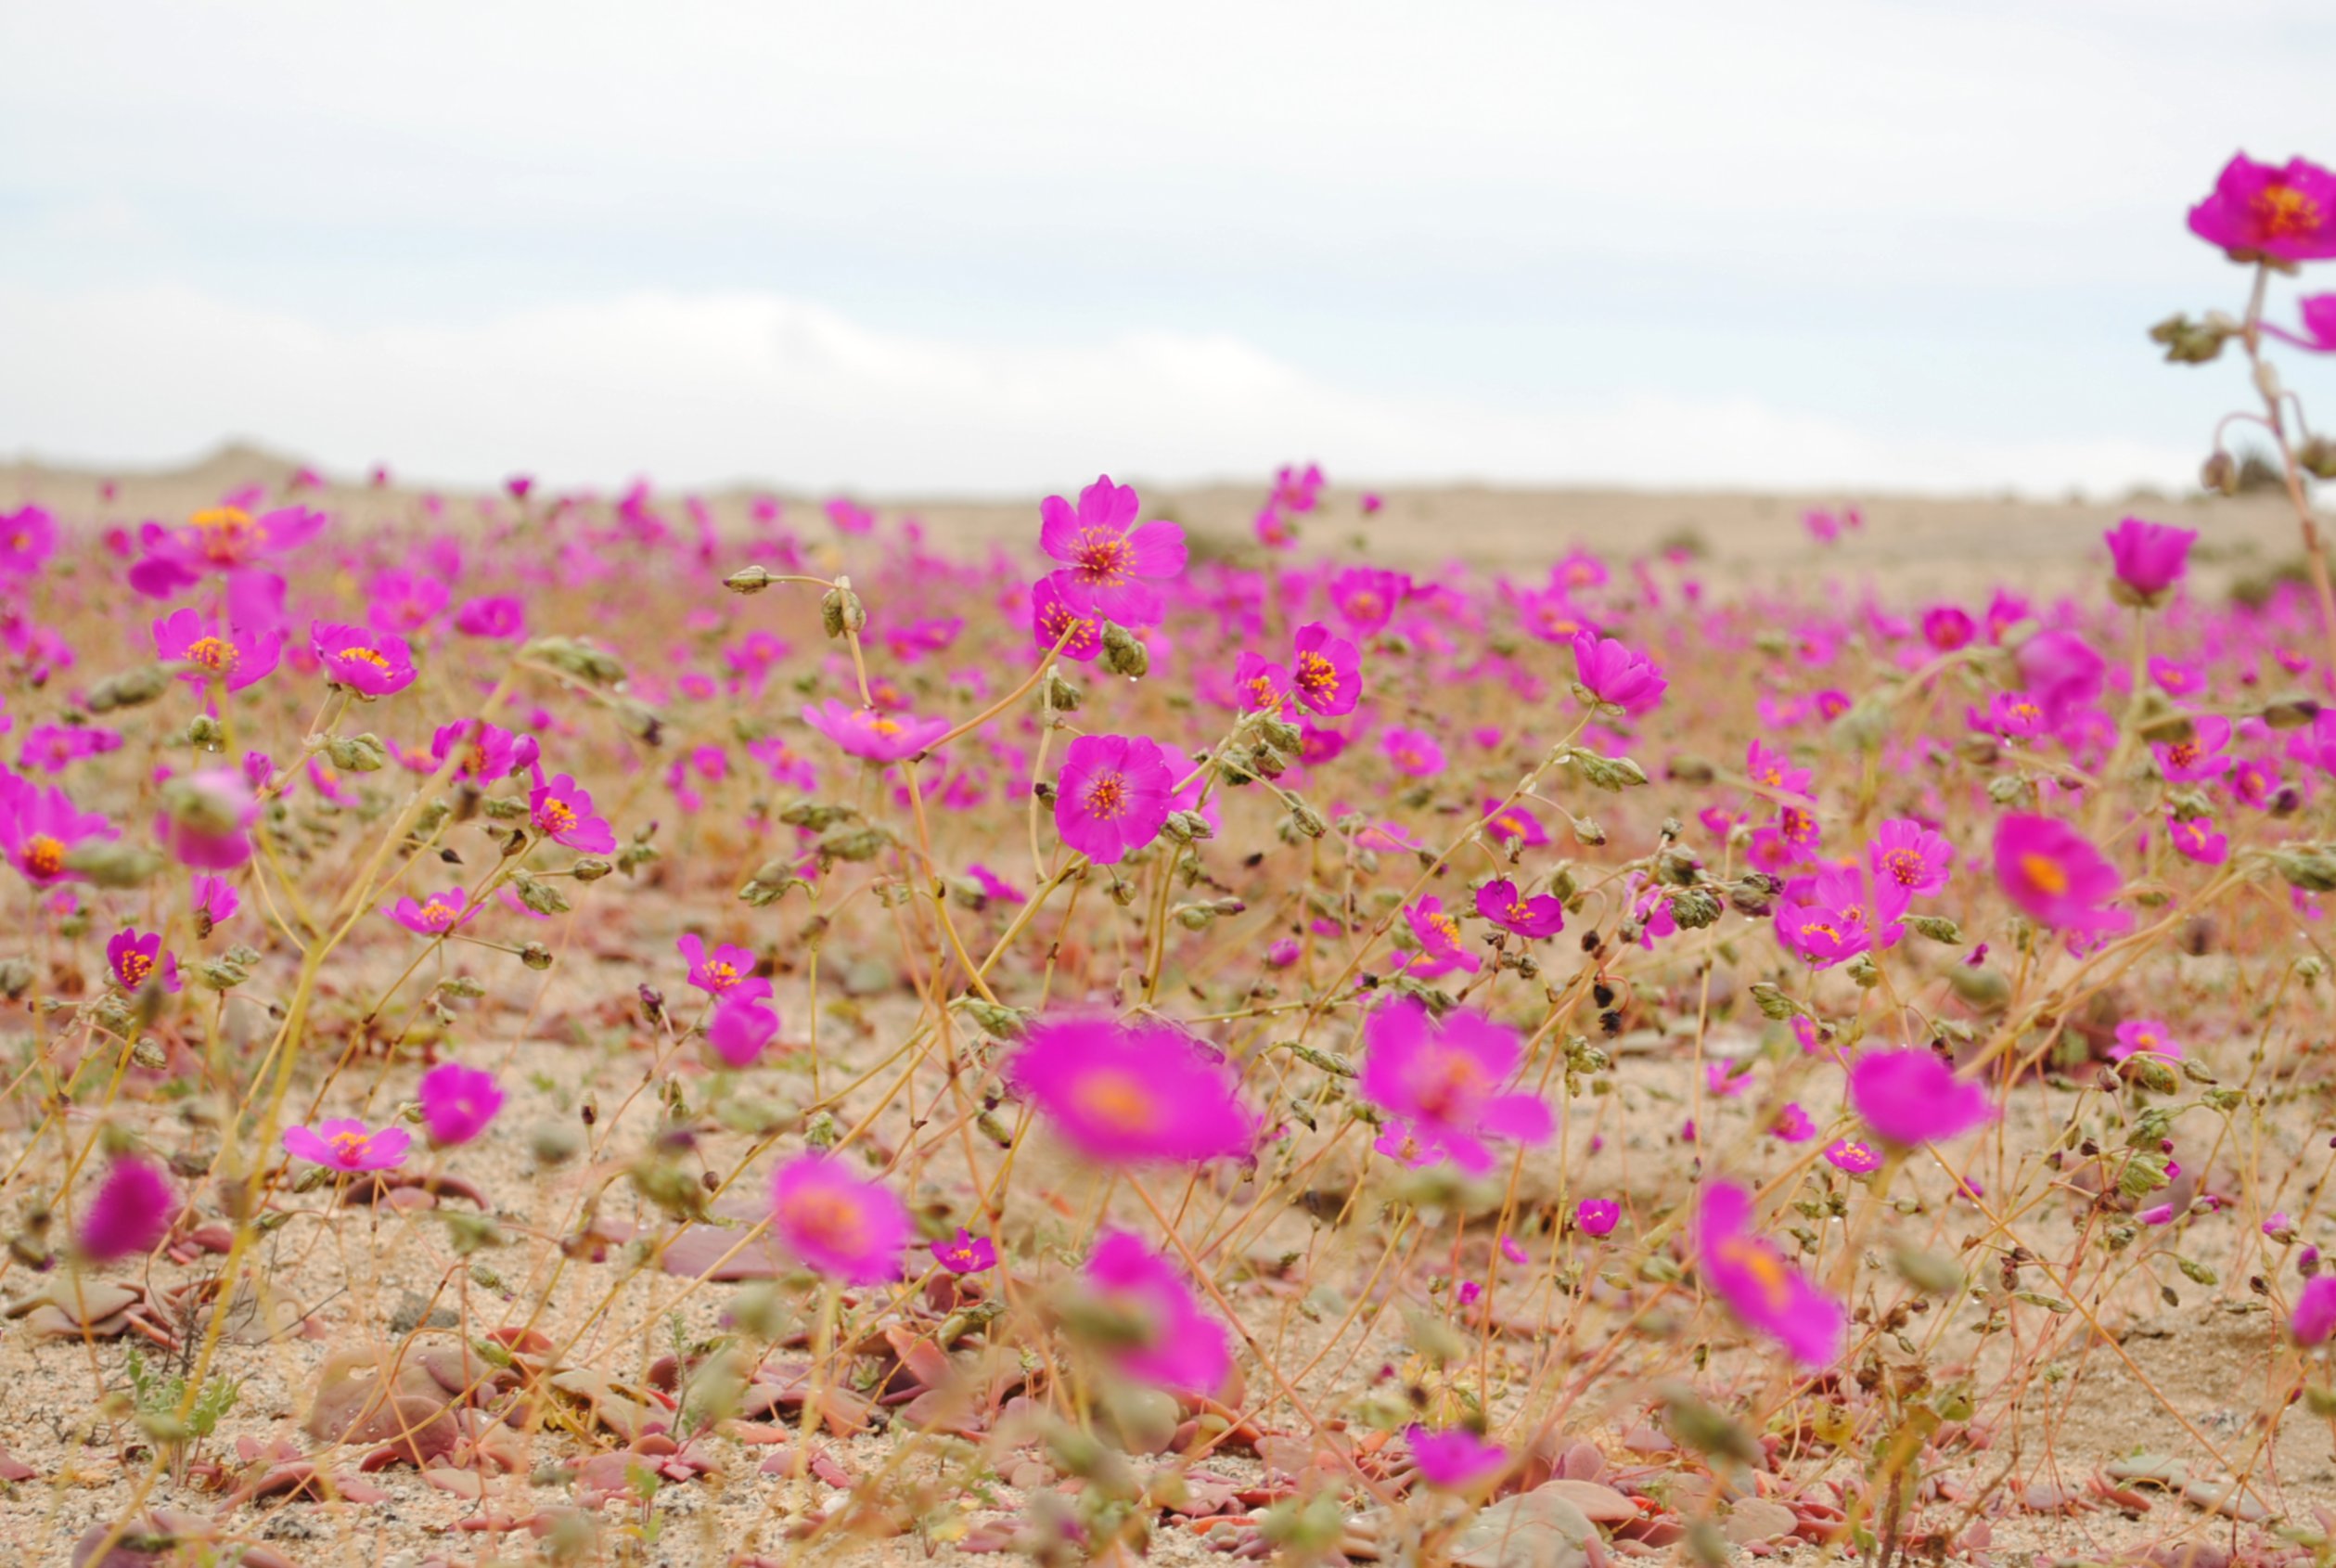 Flowers bloom in the desert